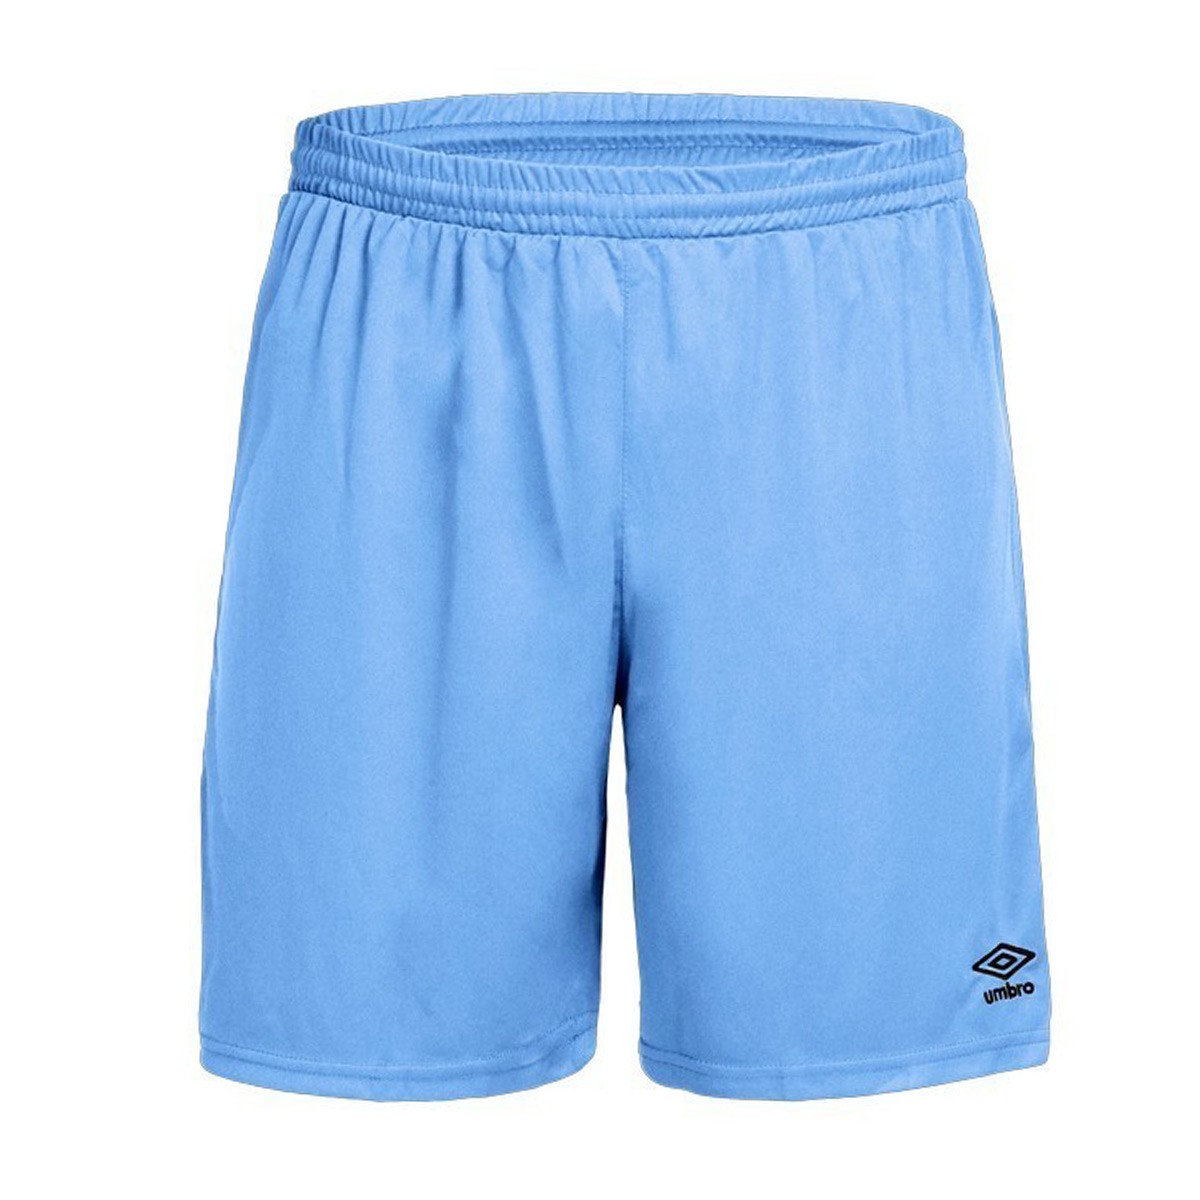 umbro shorts blue